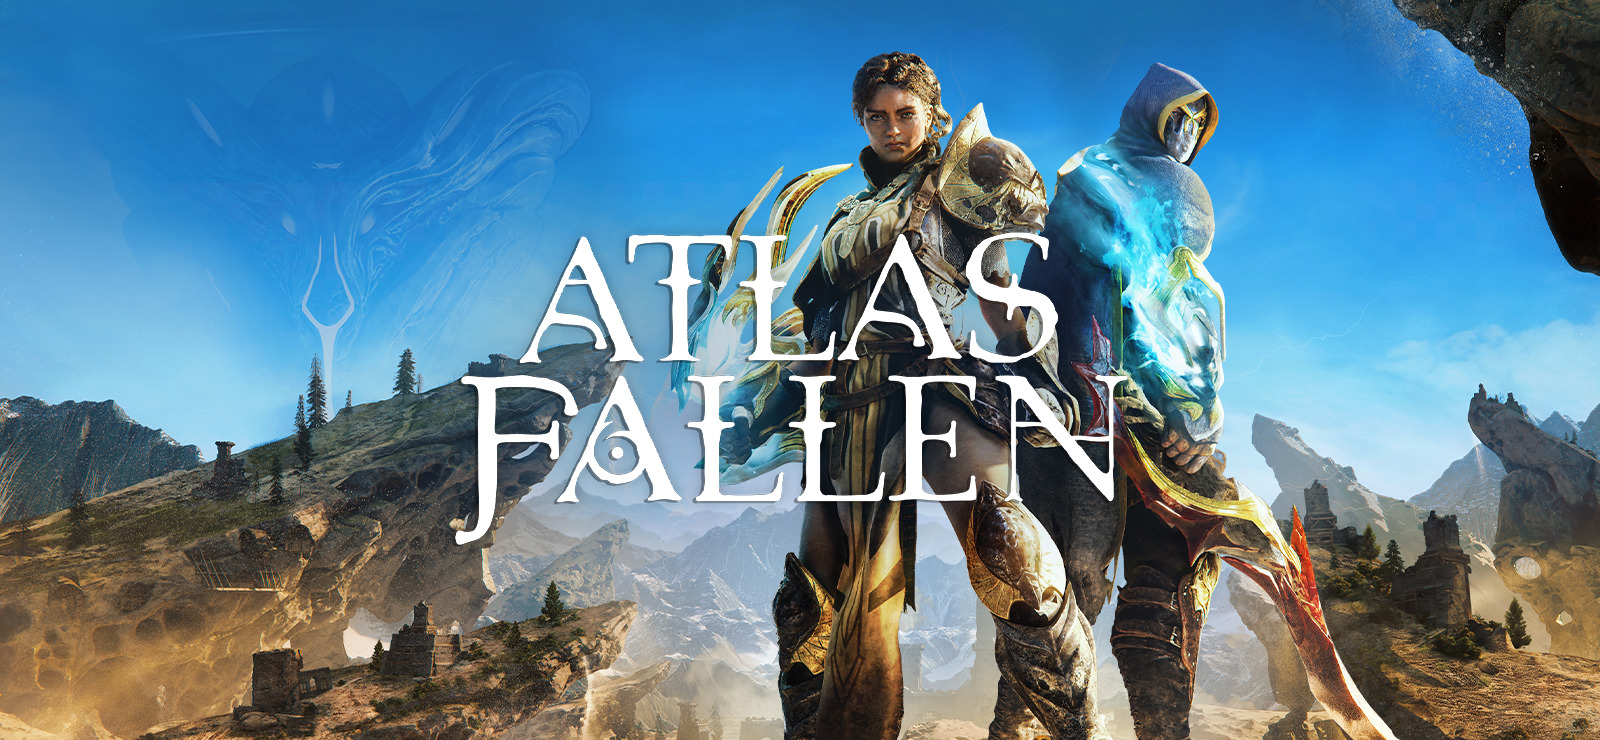 Atlas Fallen демонстрирует свою боевую систему в трейлере